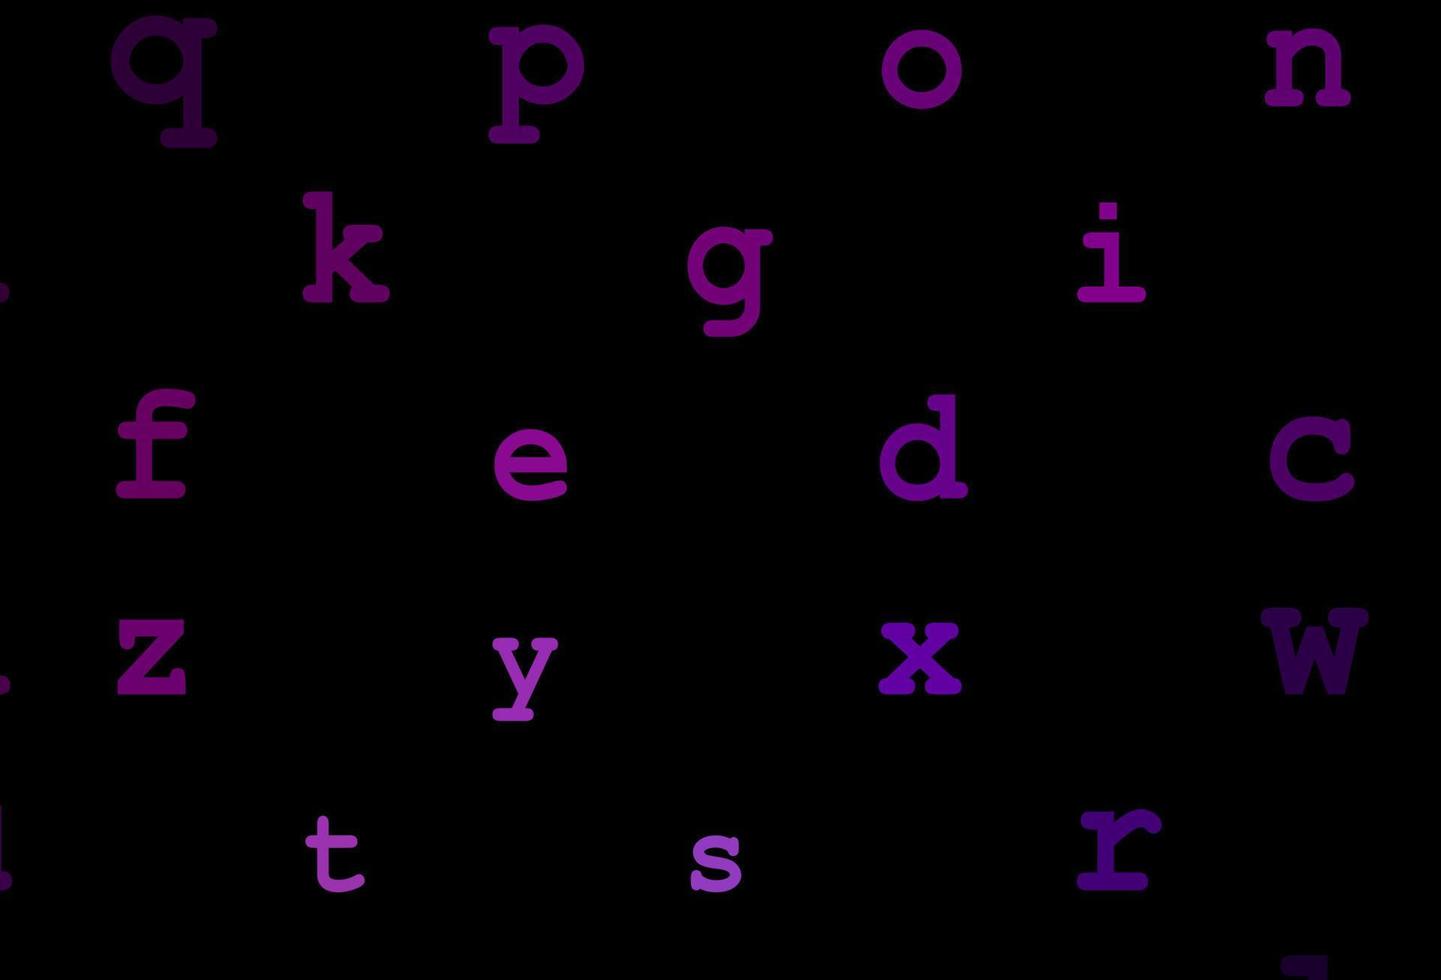 modello vettoriale viola scuro con lettere isolate.